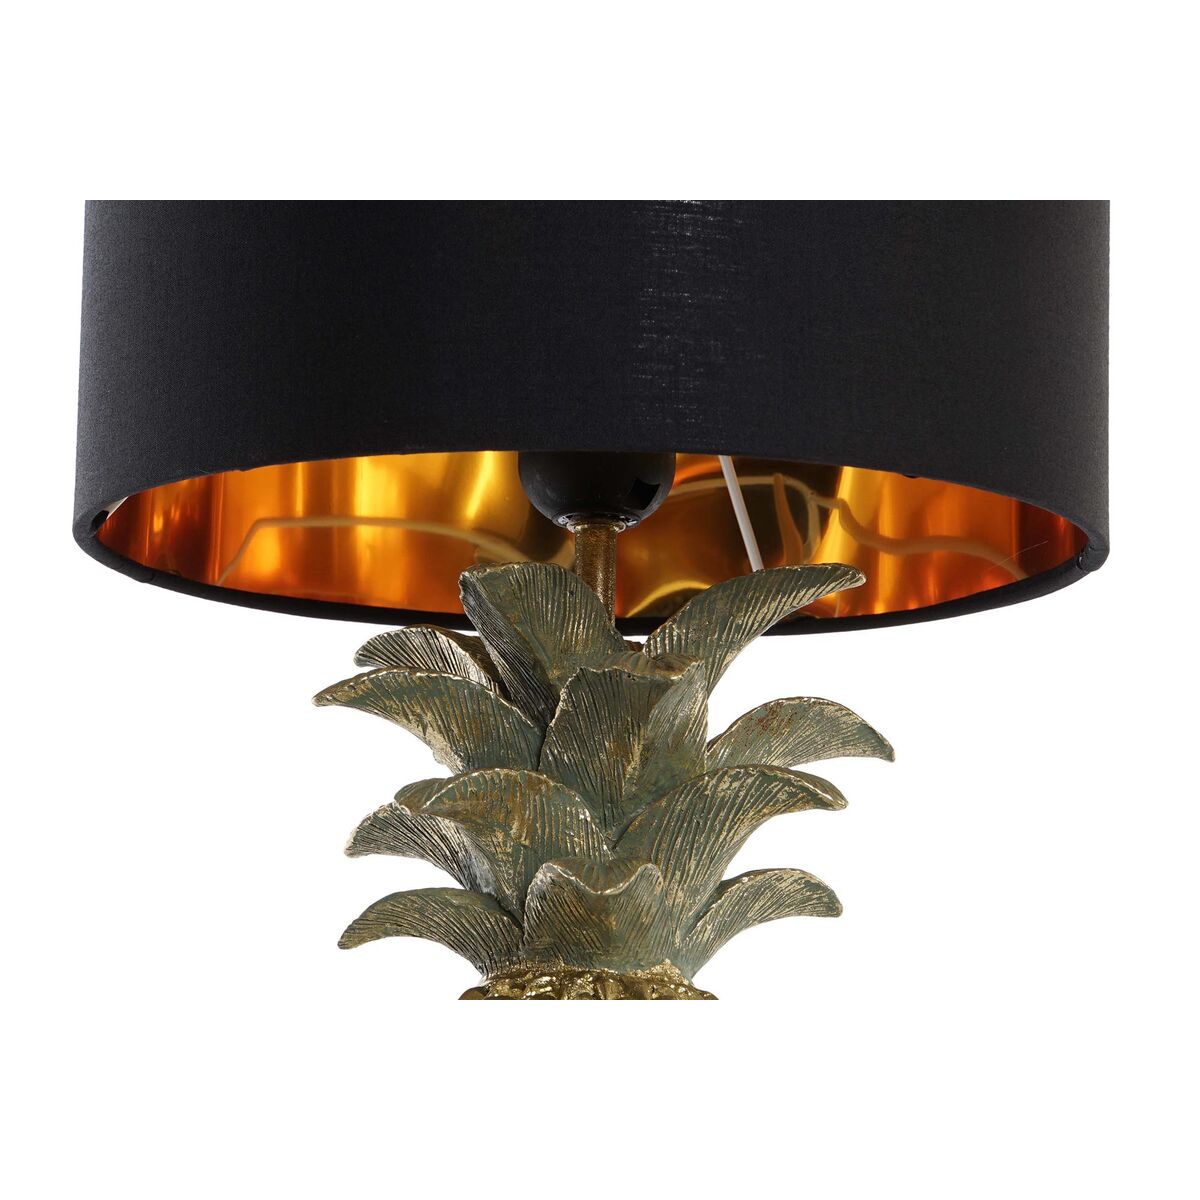 Table lamp pineapple black golden resin